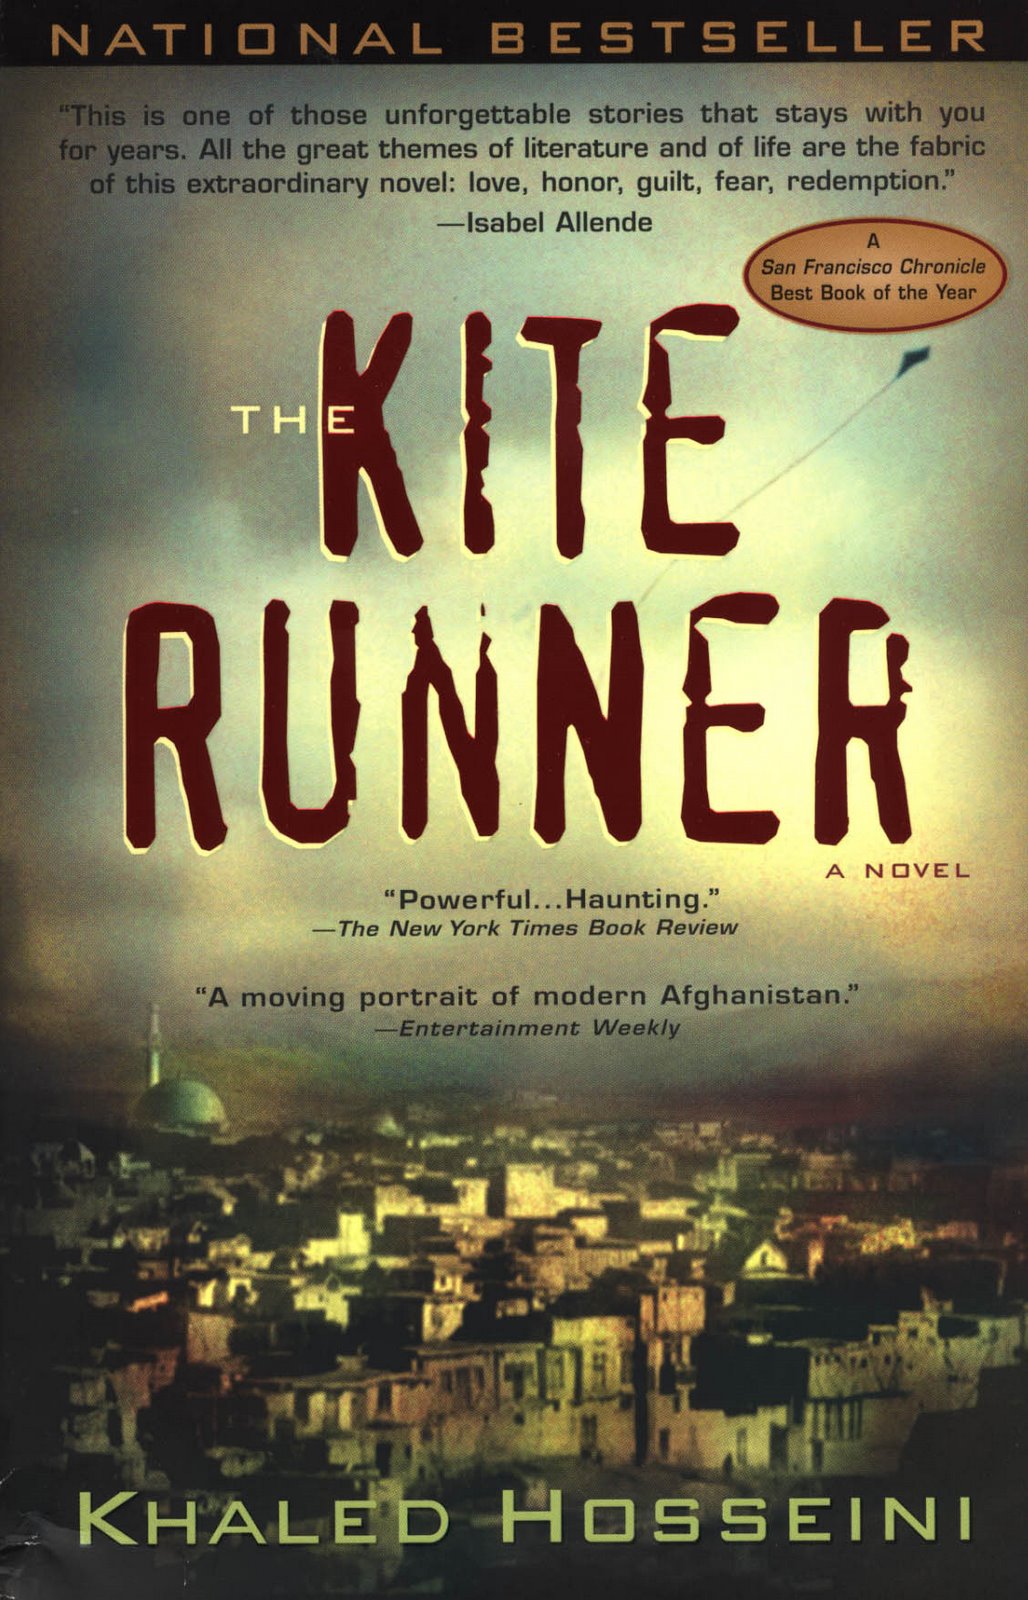 [kite-runner-book-jacket.jpg]